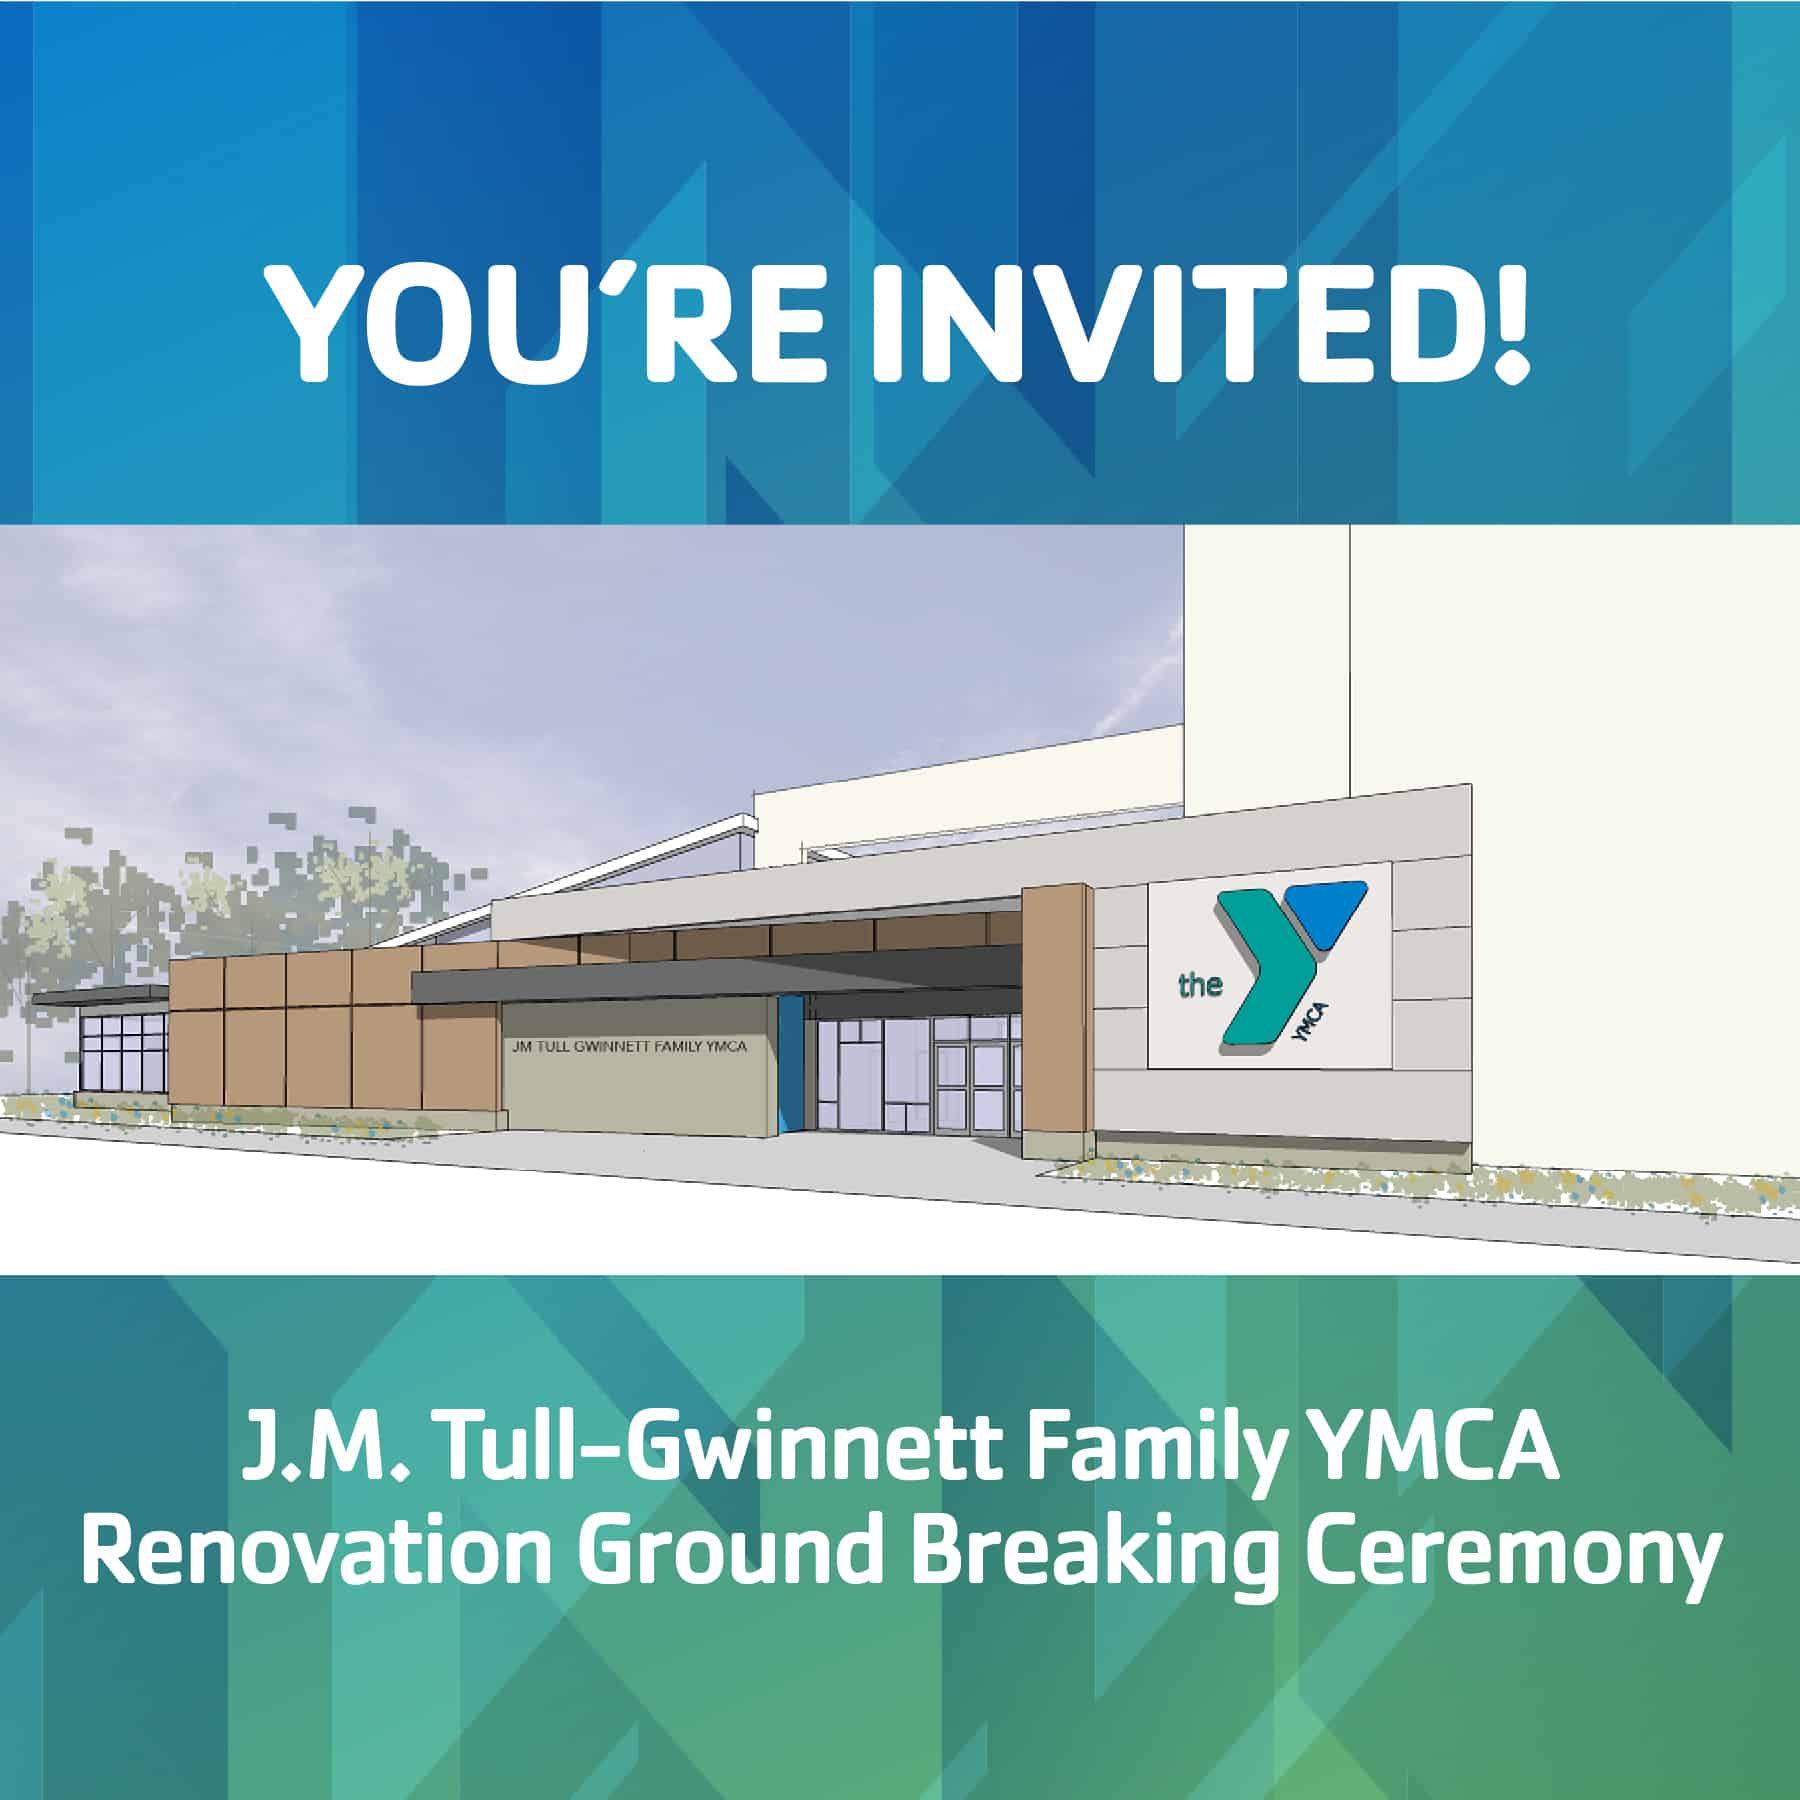 J.M. Tull-Gwinnett Family YMCA Renovation Groundbreaking @ J.M. Tull-Gwinnett Family YMCA |  |  | 